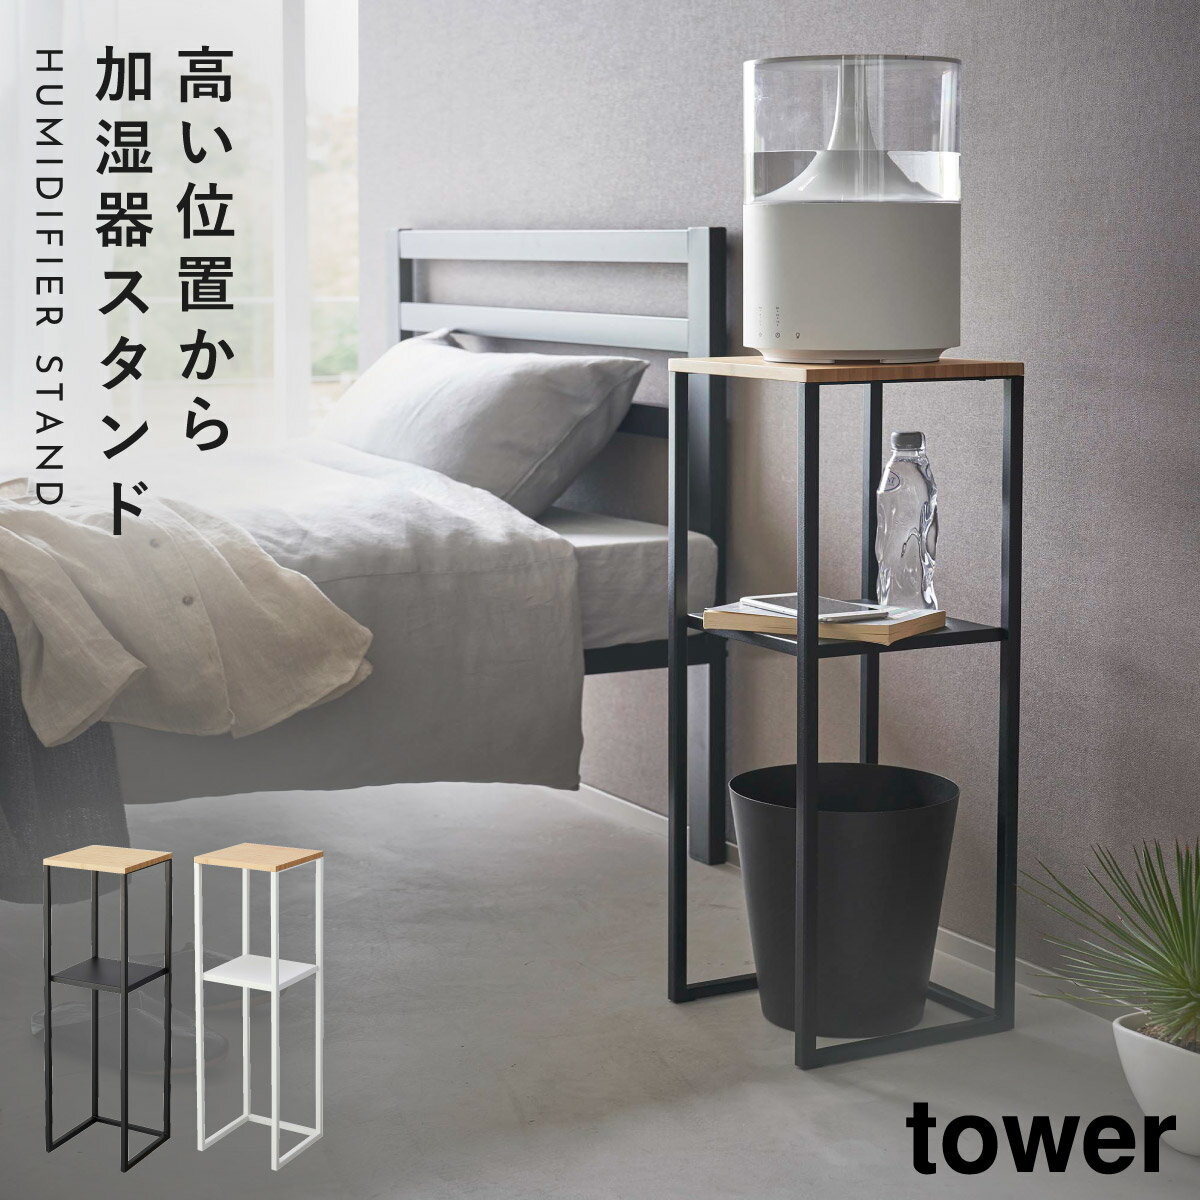 加湿器スタンド tower 山崎実業 モノトーン 寝室 玄関 効率的 加湿器スタンド タワー